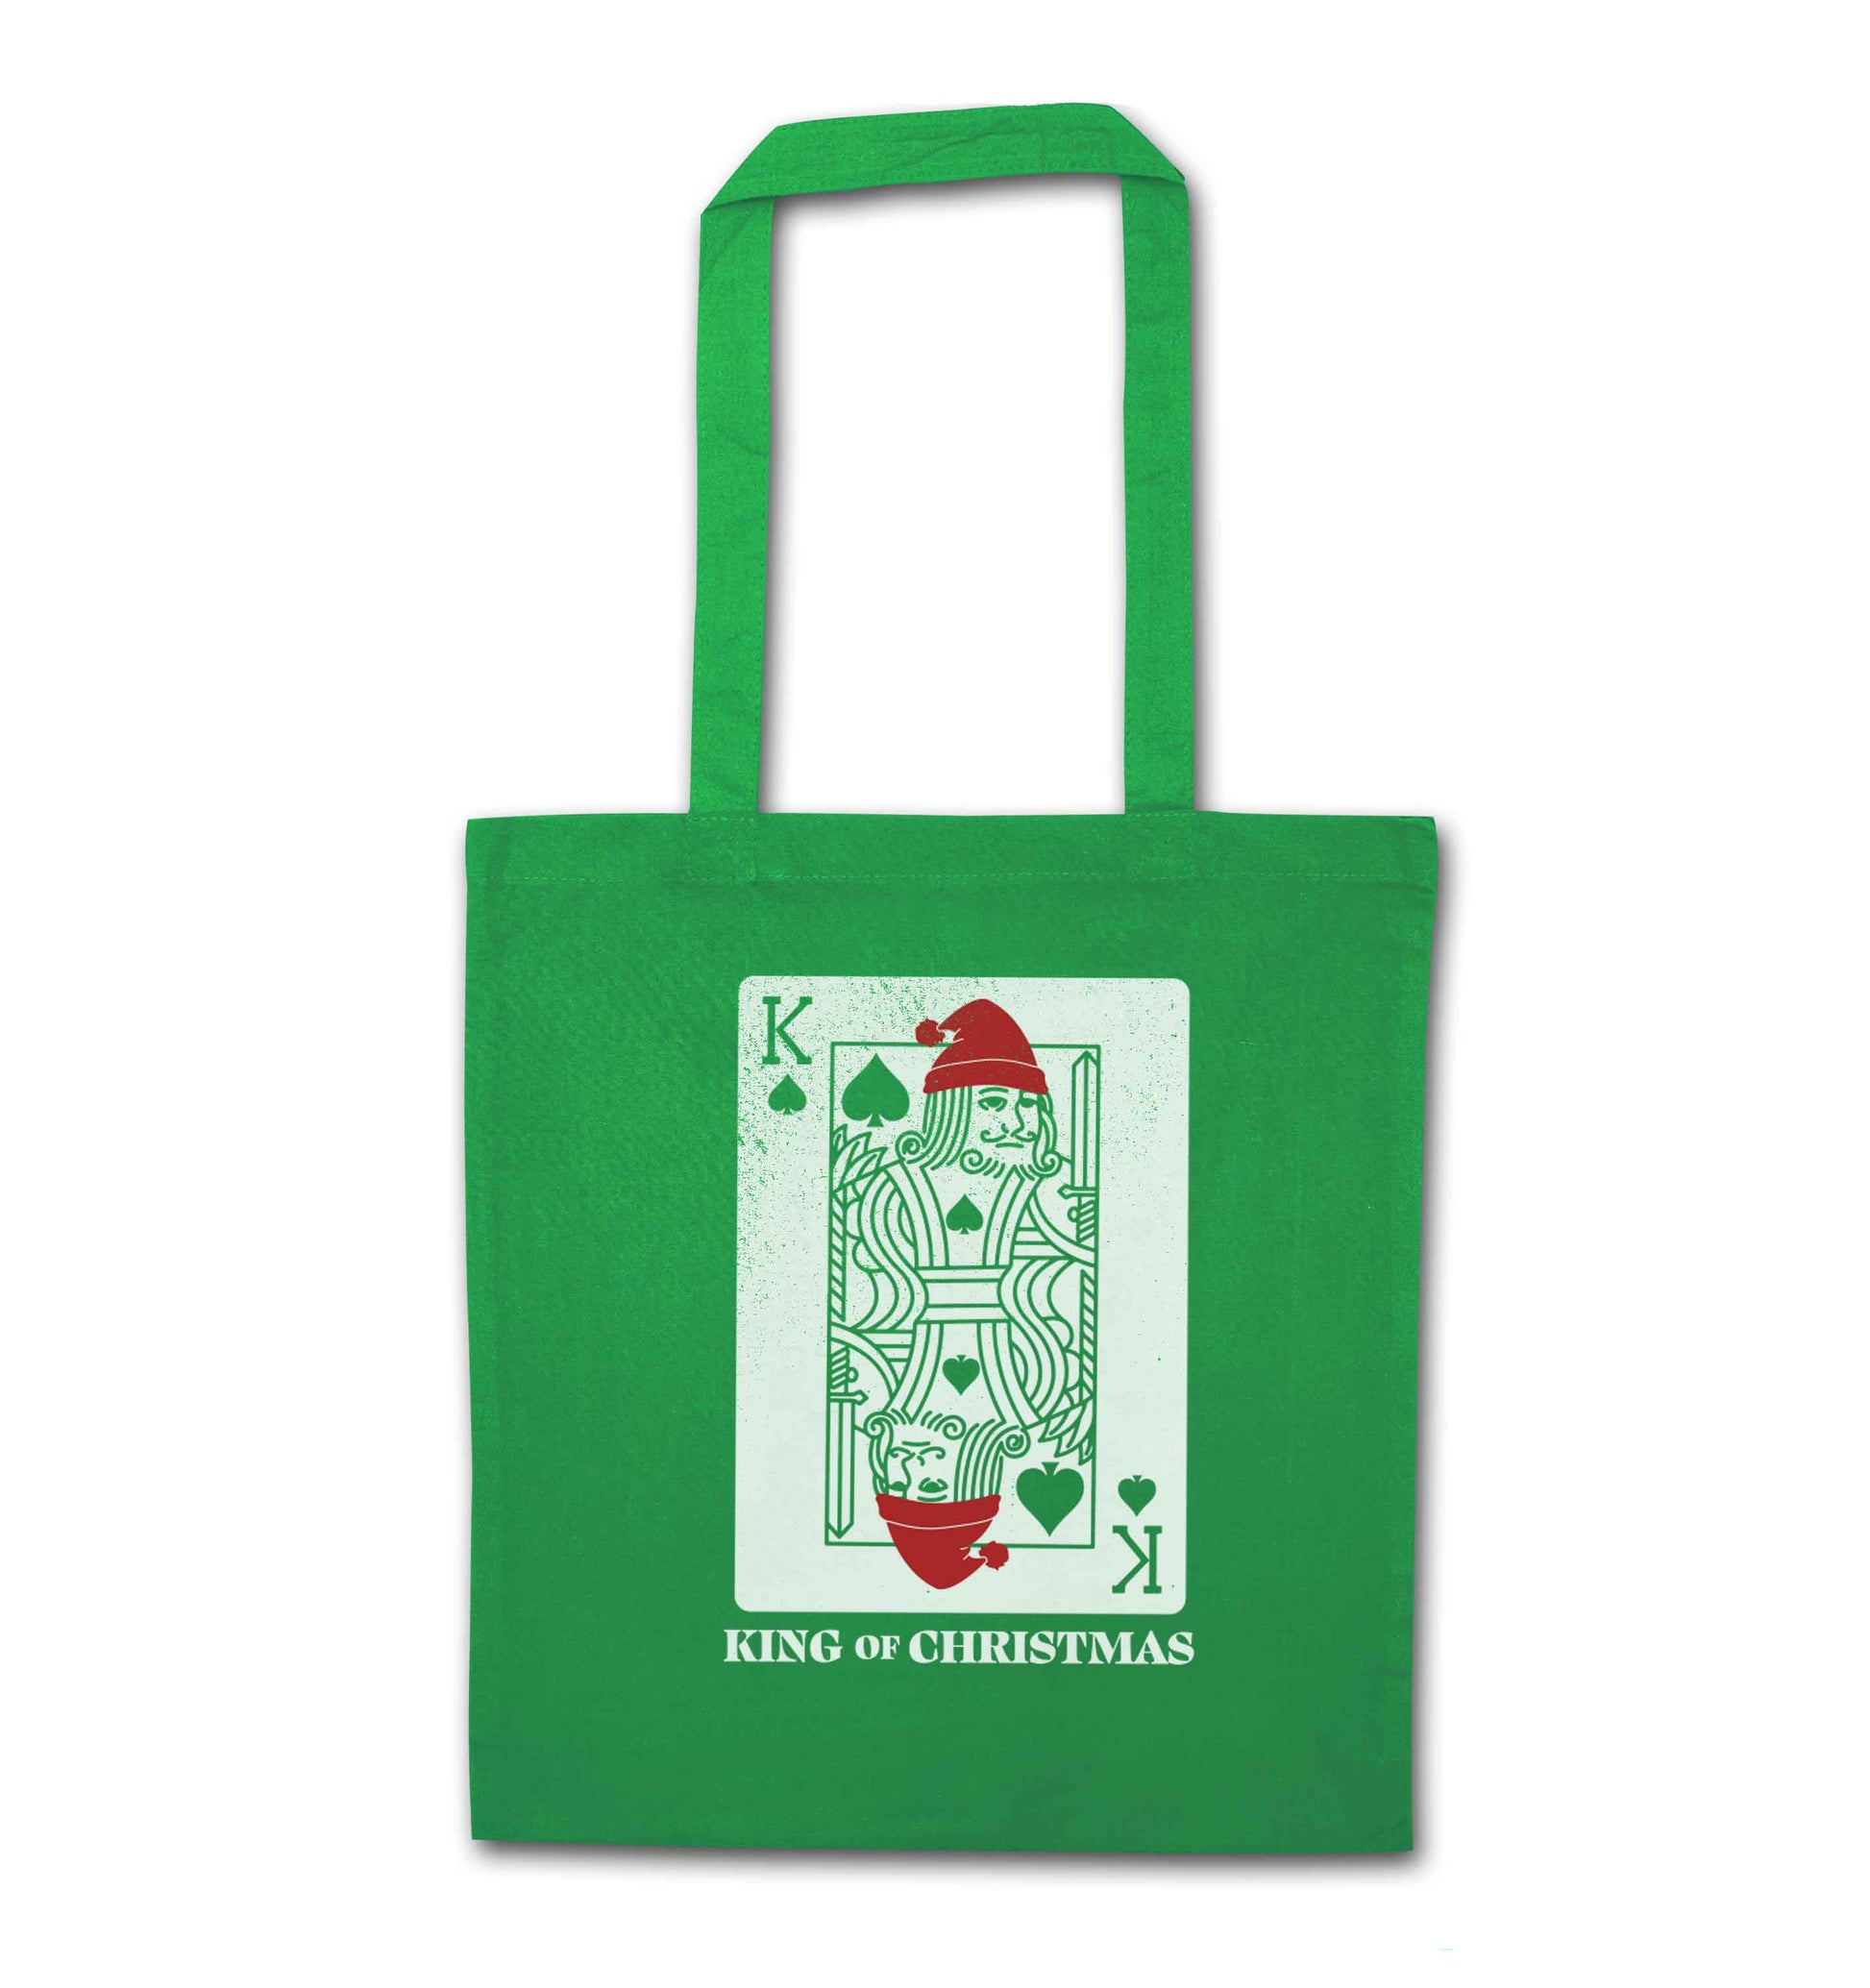 King of christmas green tote bag